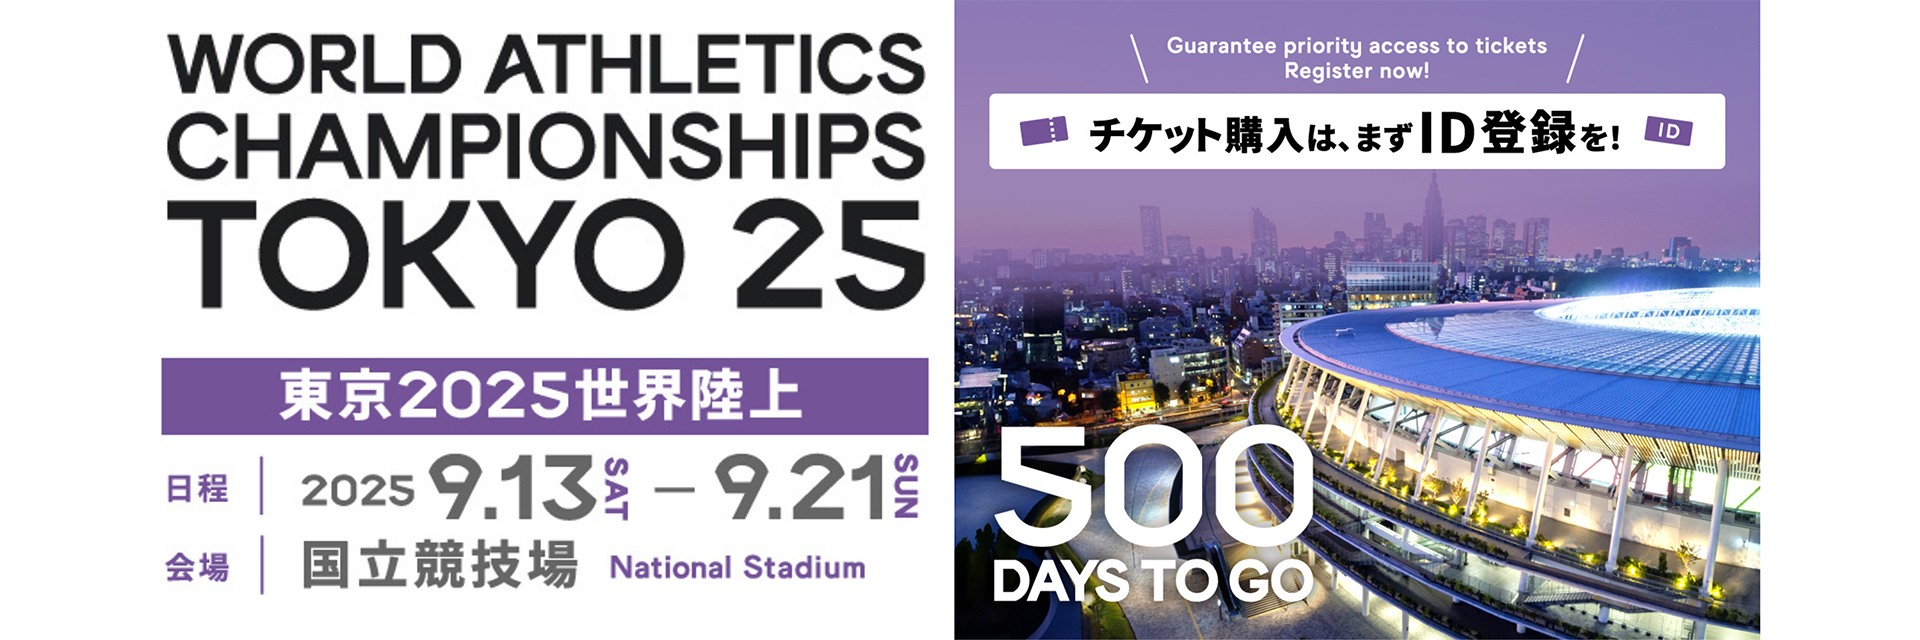 【東京2025世界陸上財団】500 Days to Go！開催まであと 500 日！